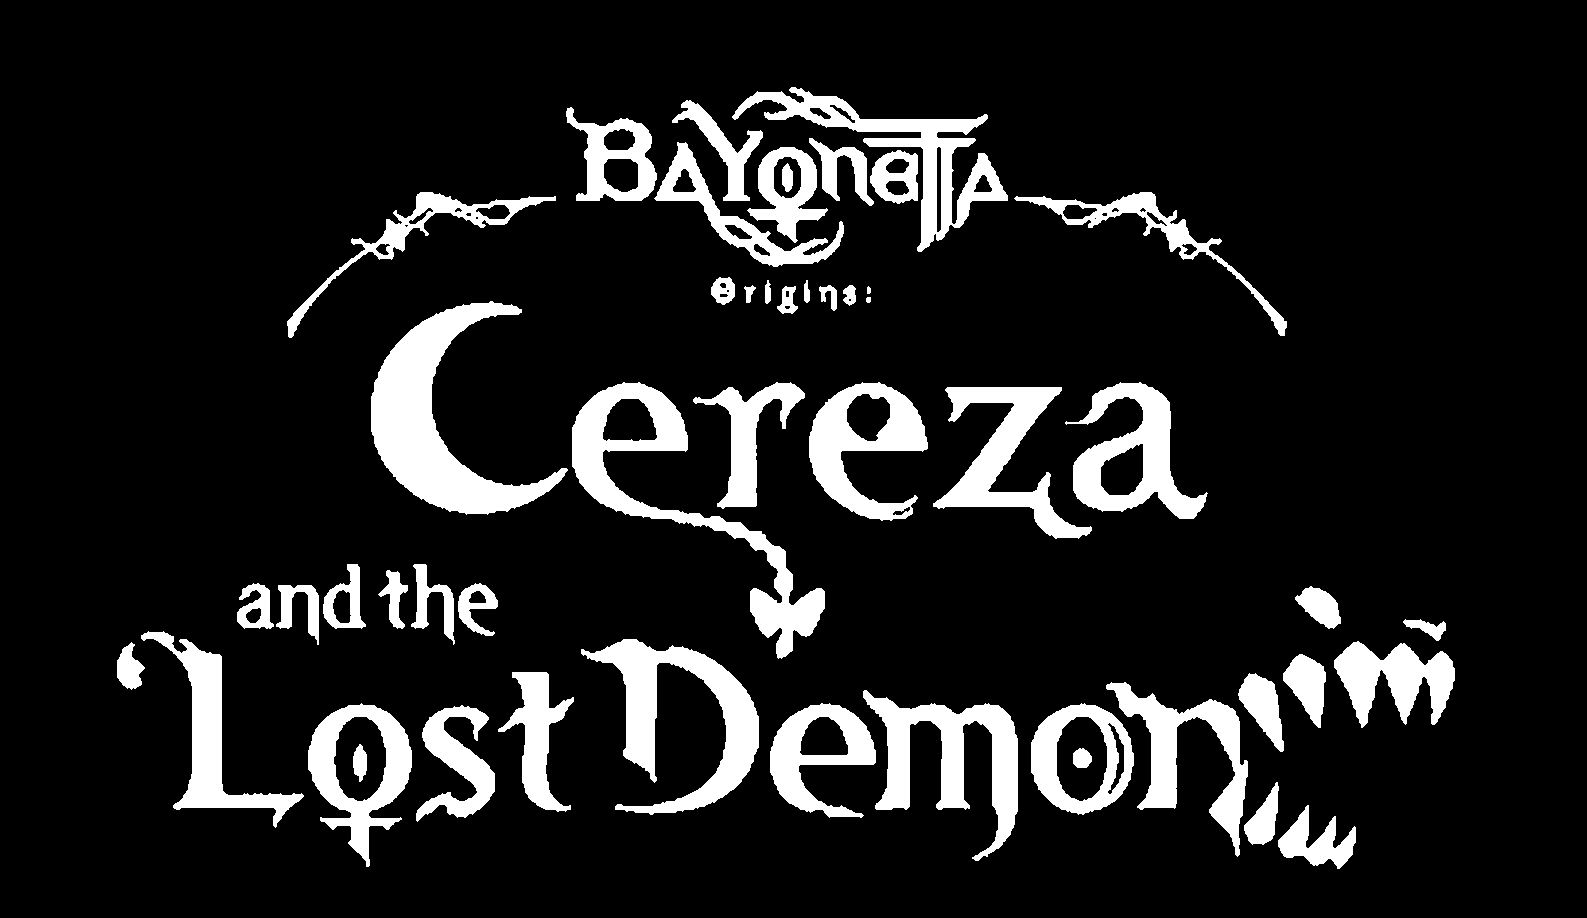 Trademark Logo BAYONETTA ORIGINS: CEREZA AND THE LOST DEMON